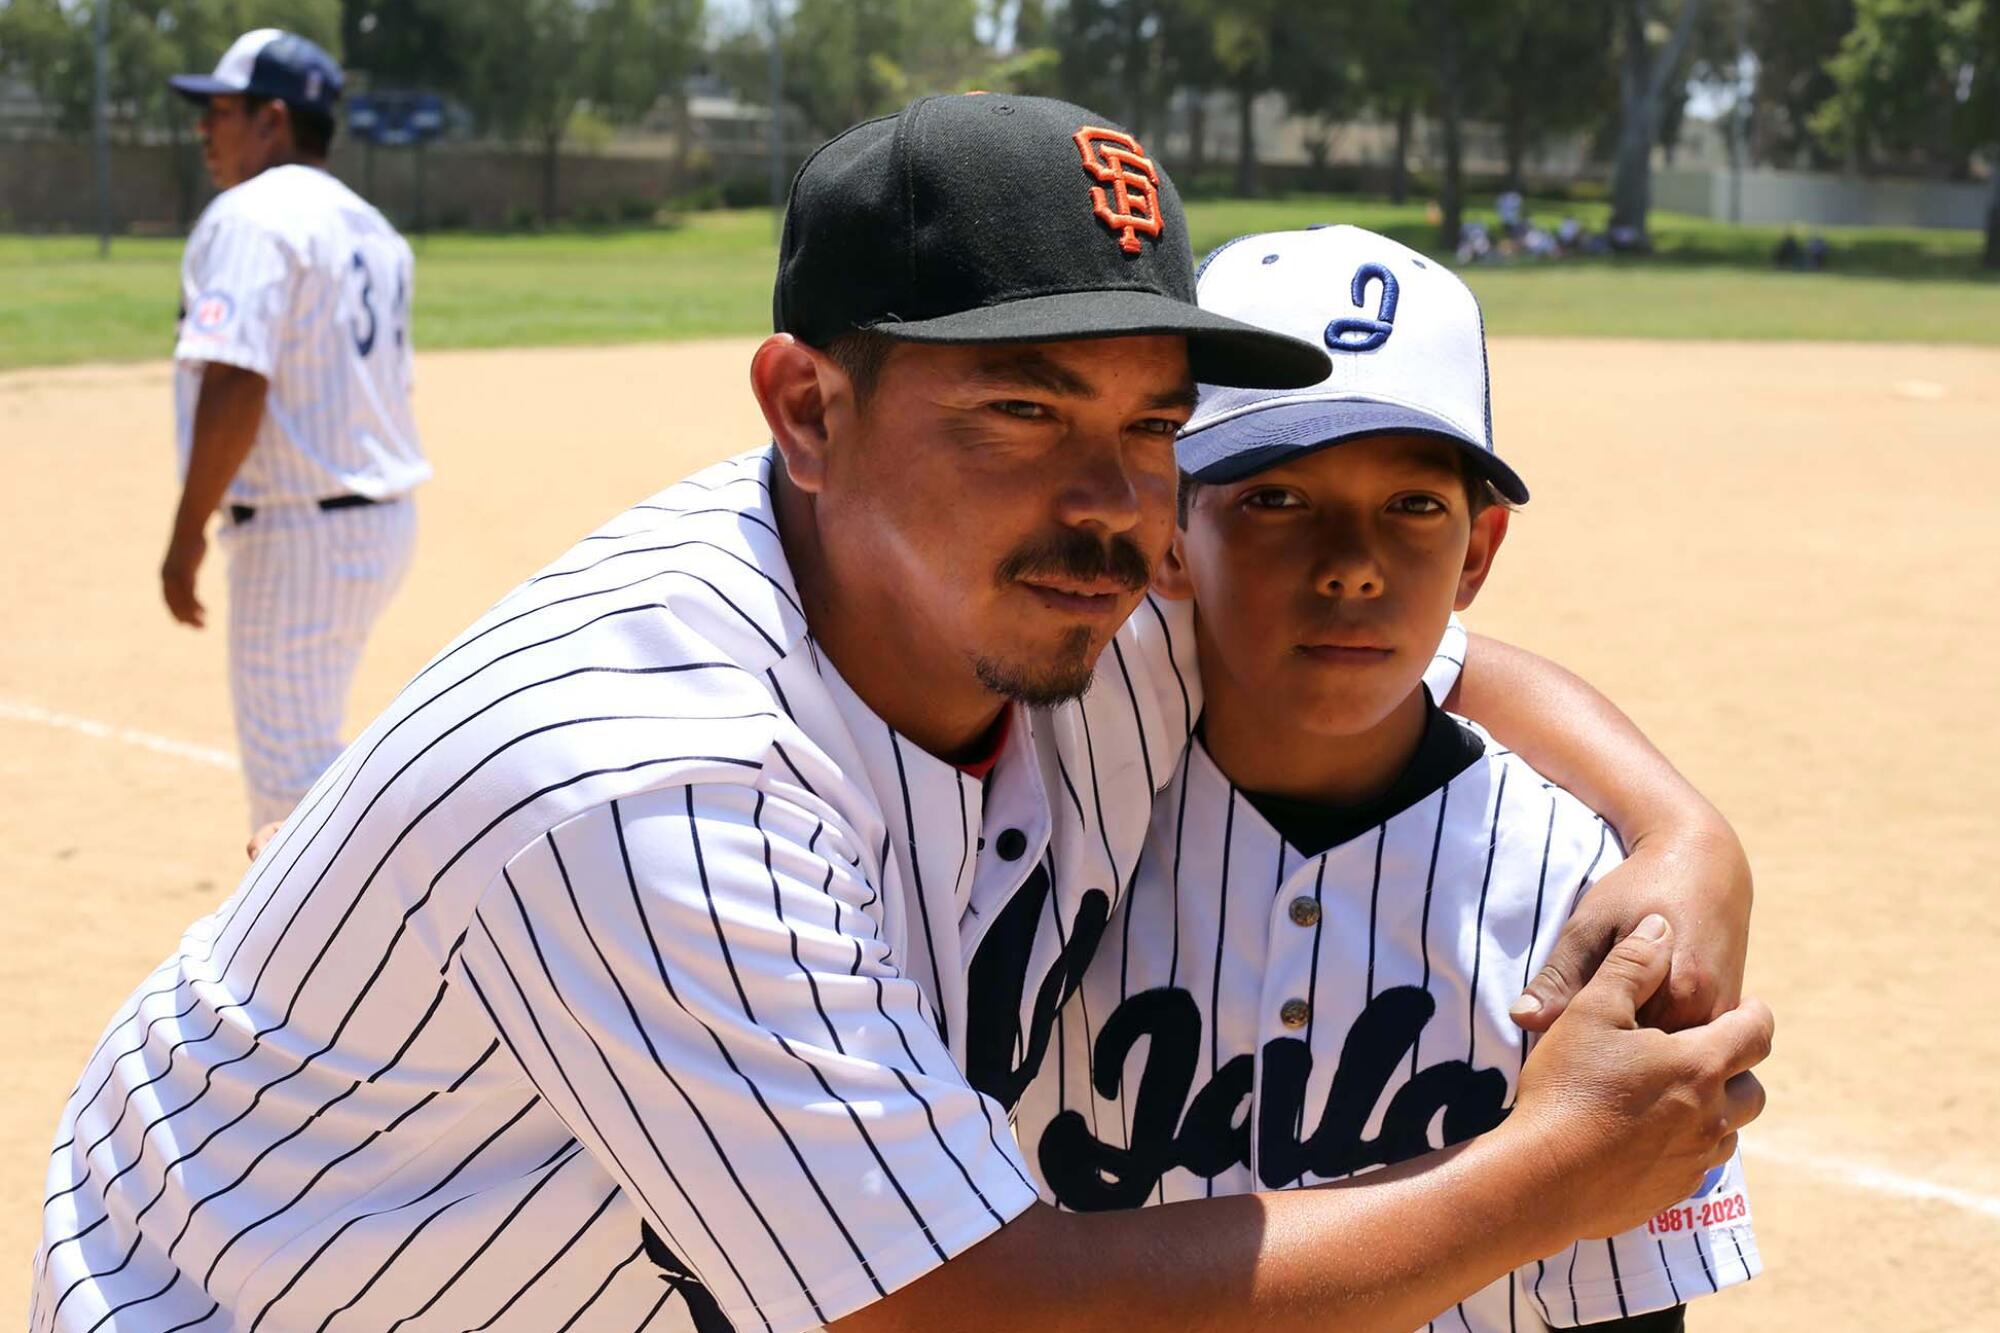 Visita de equipo juvenil mexicano causó reencuentro en LA - Los